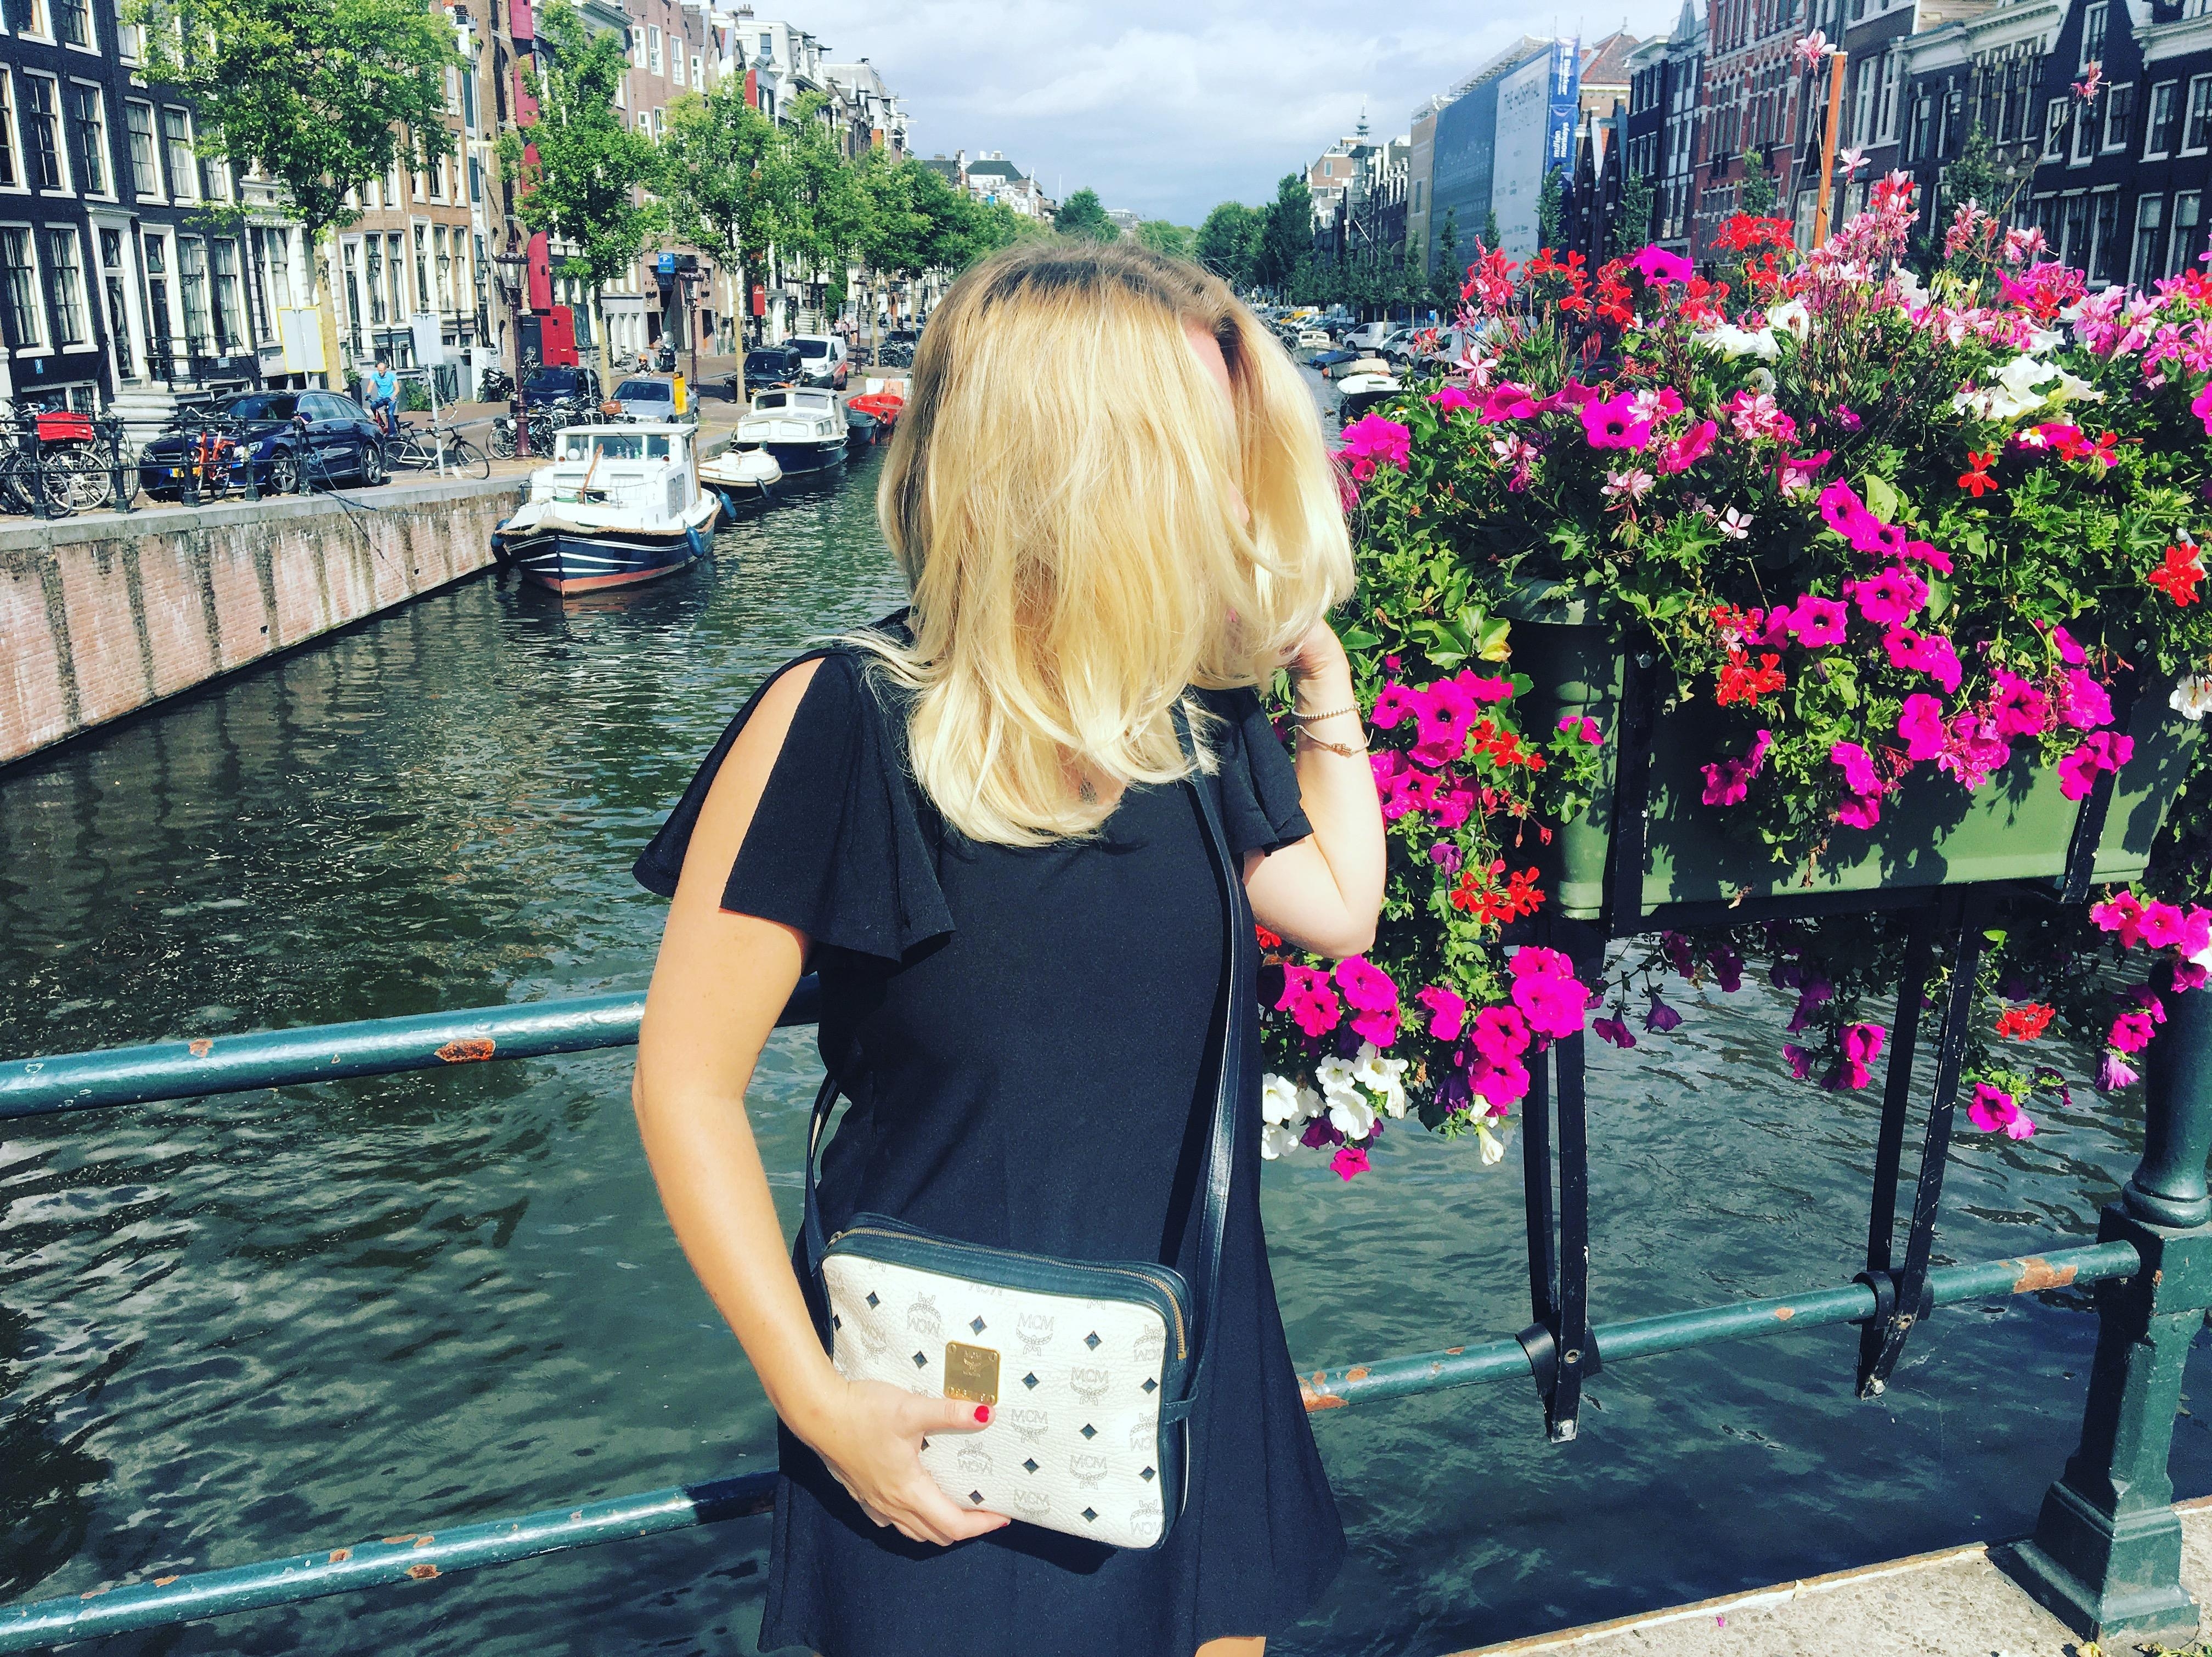 Enjoying the beautiful city 
A M S T E R D A M 🇳🇱
#amsterdam #travel #summertime #citytour 